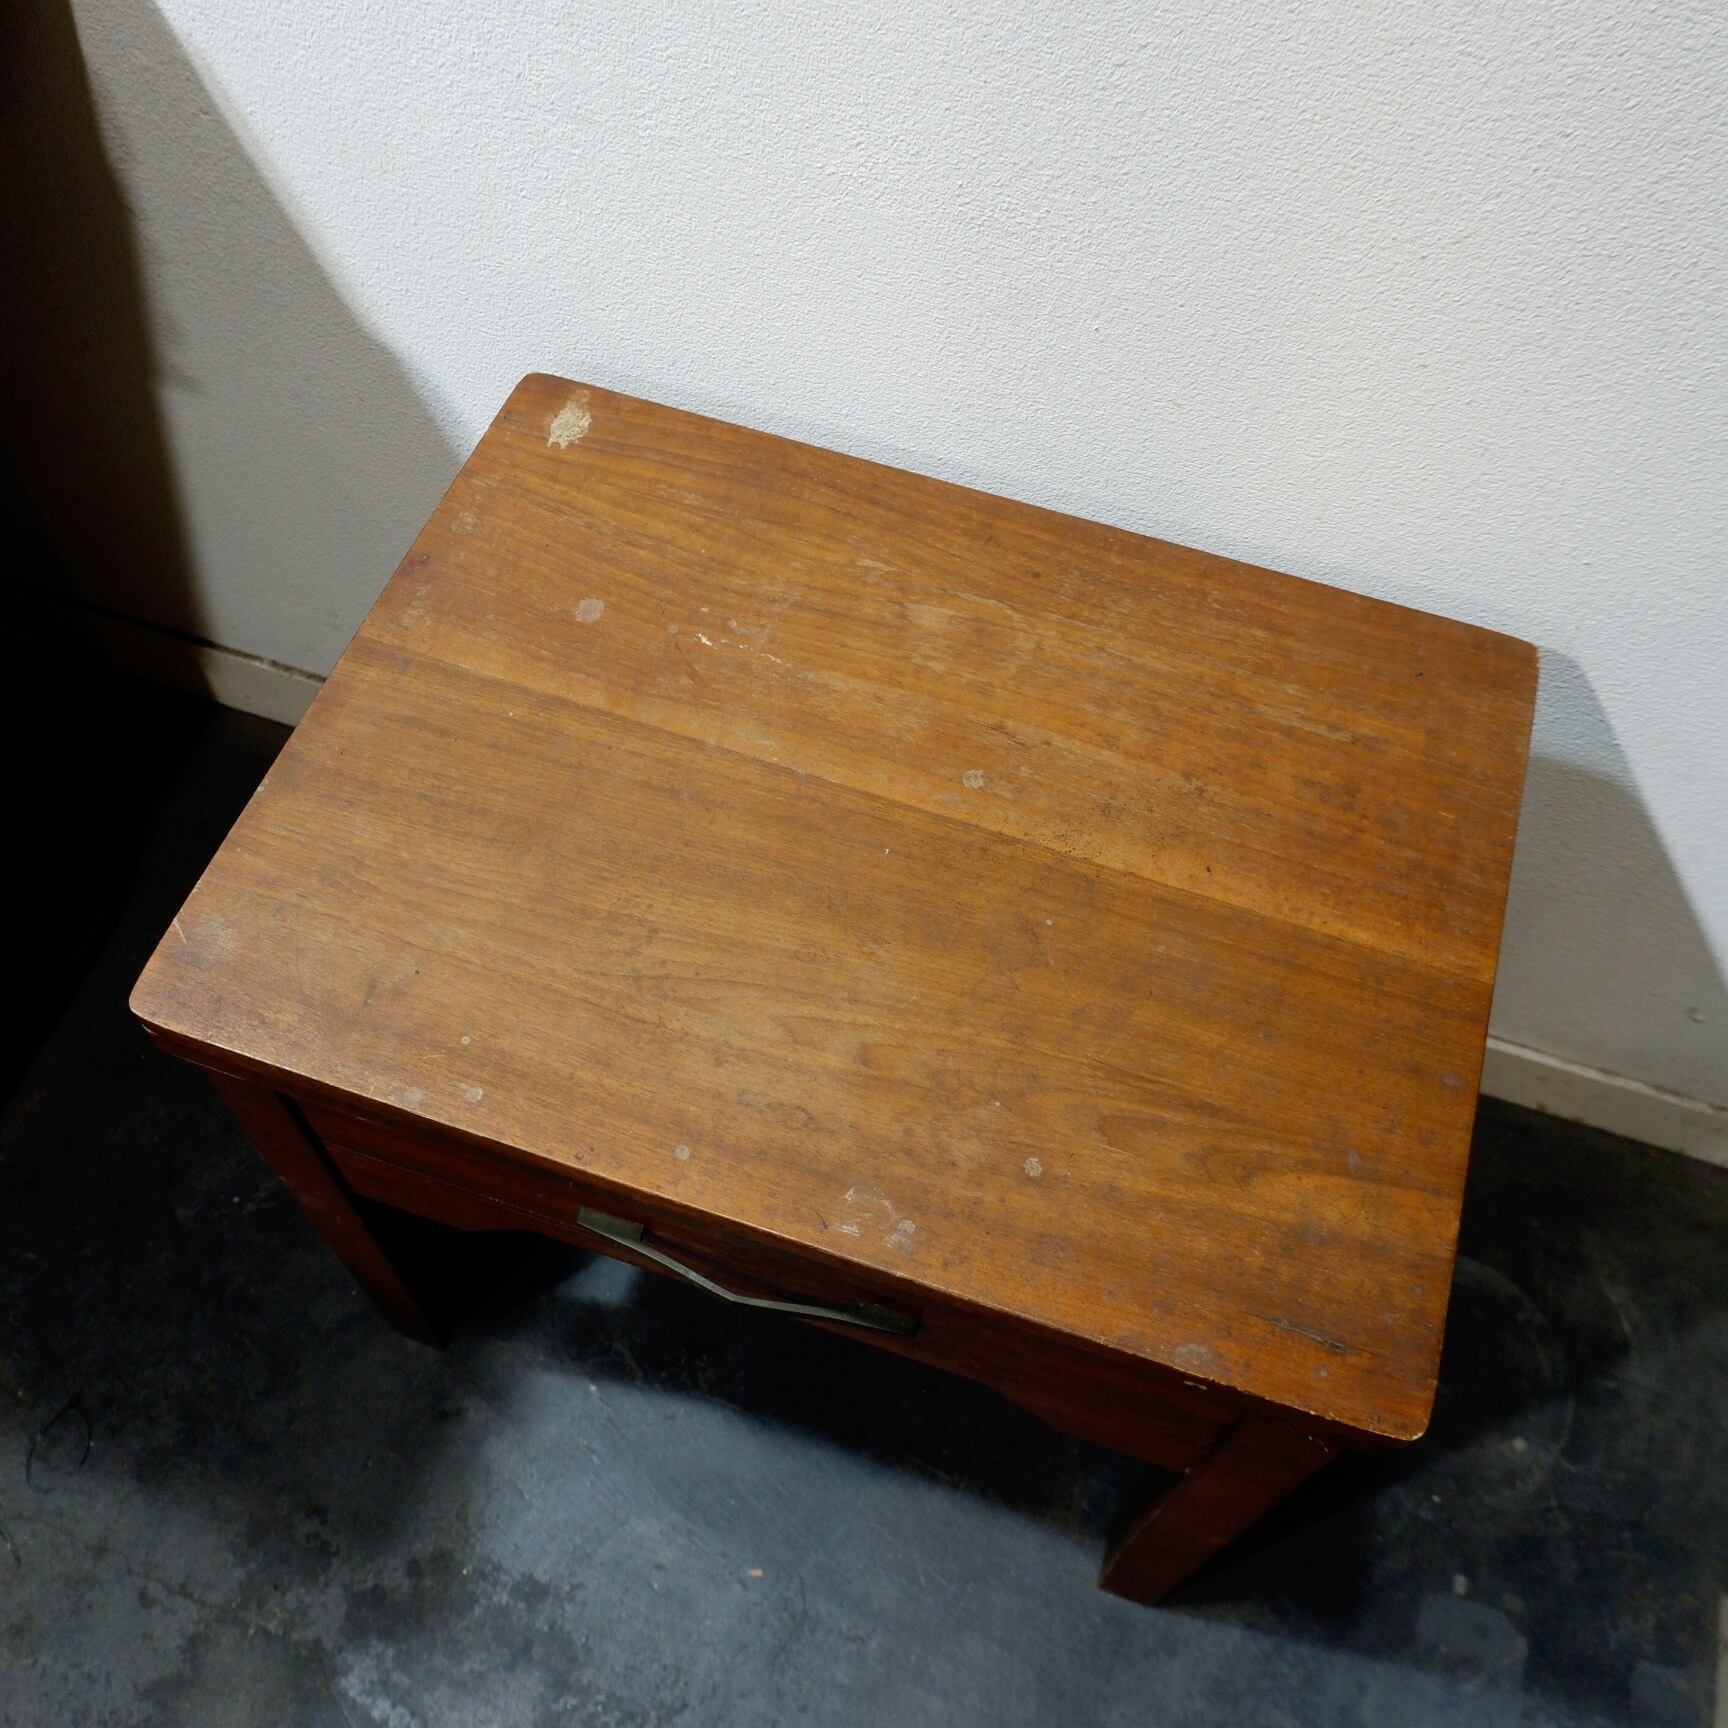 ヴィンテージ家具 木製 サイドテーブル ナイトテーブル ミシン台